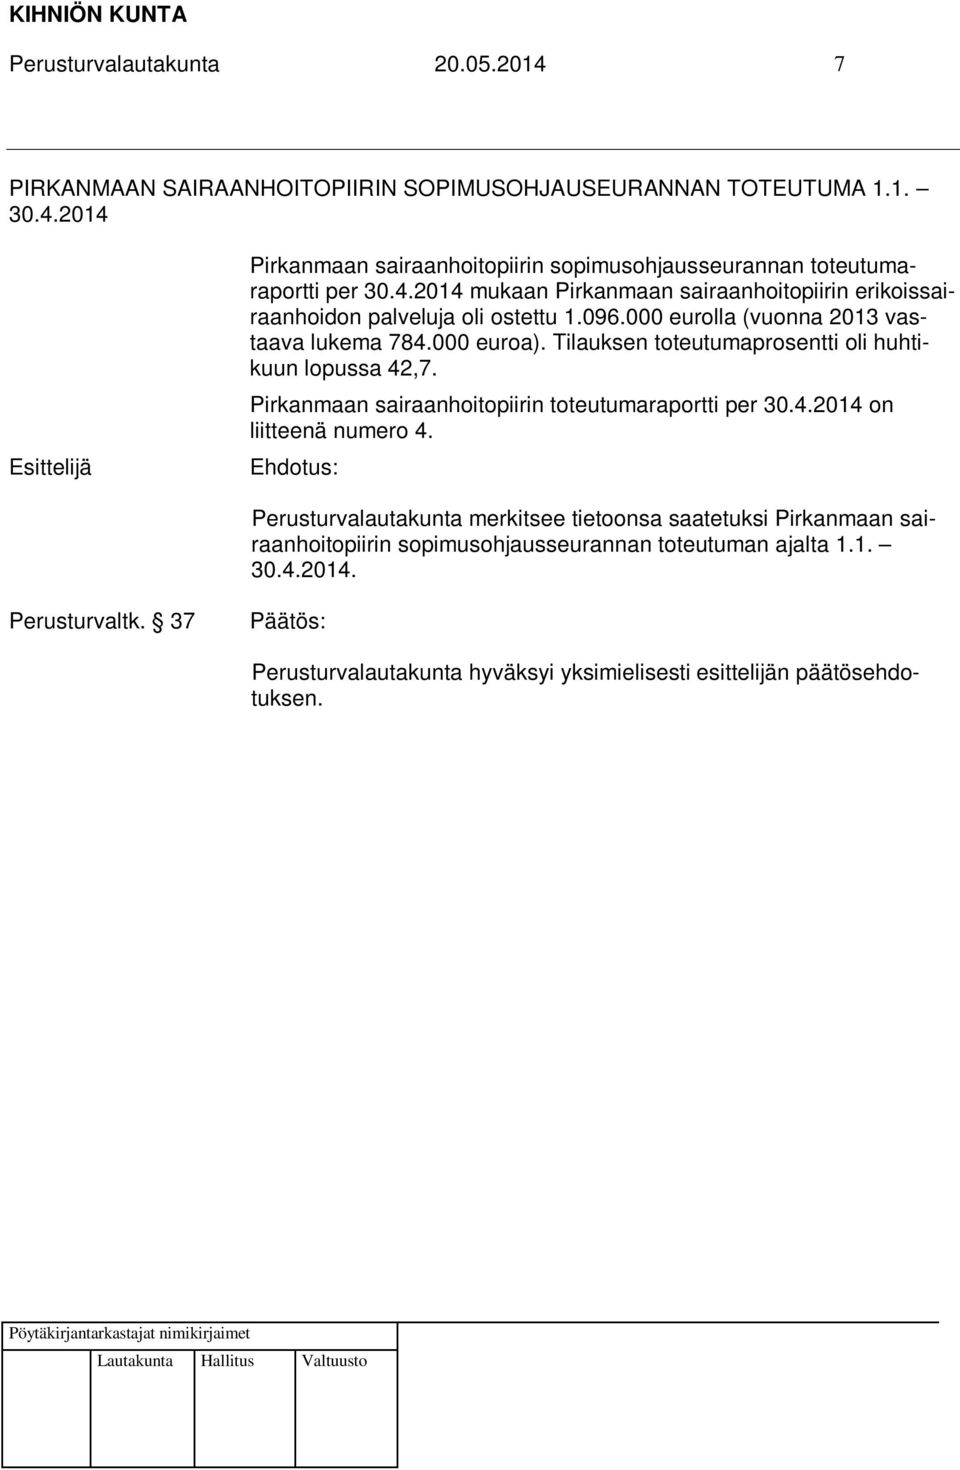 Tilauksen toteutumaprosentti oli huhtikuun lopussa 42,7. Pirkanmaan sairaanhoitopiirin toteutumaraportti per 30.4.2014 on liitteenä numero 4.